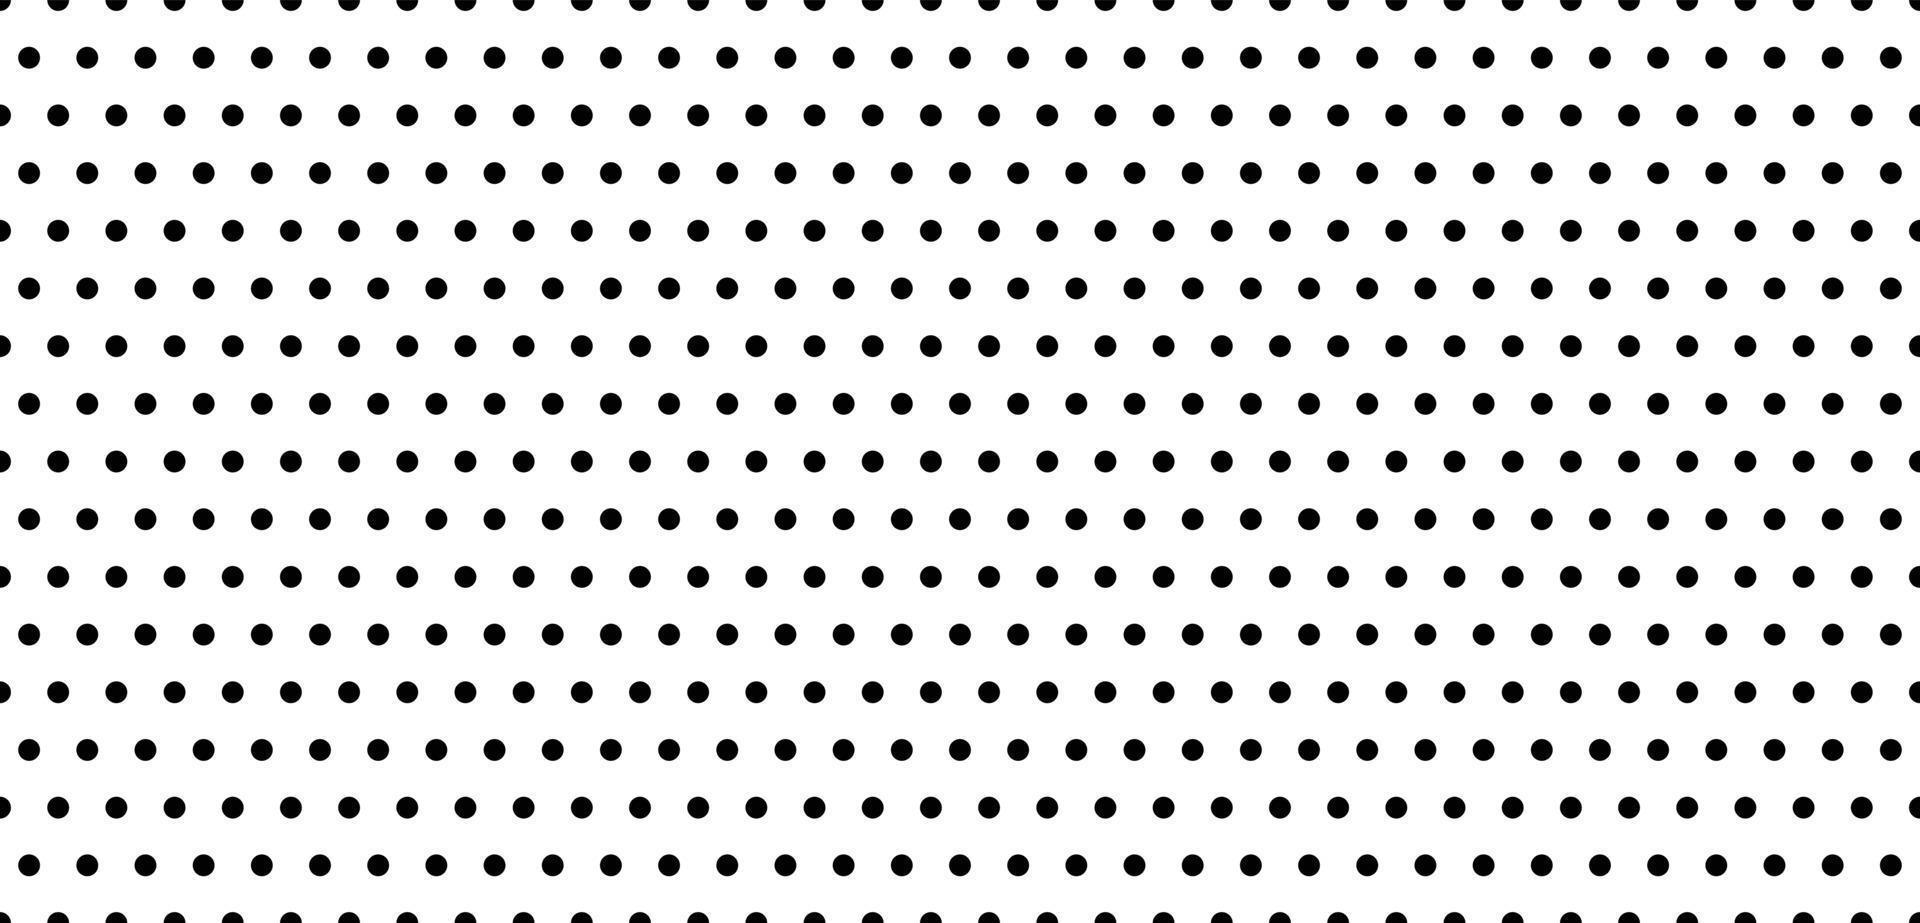 Download Dots, Polka Dot, Pattern. Royalty-Free Vector Graphic - Pixabay